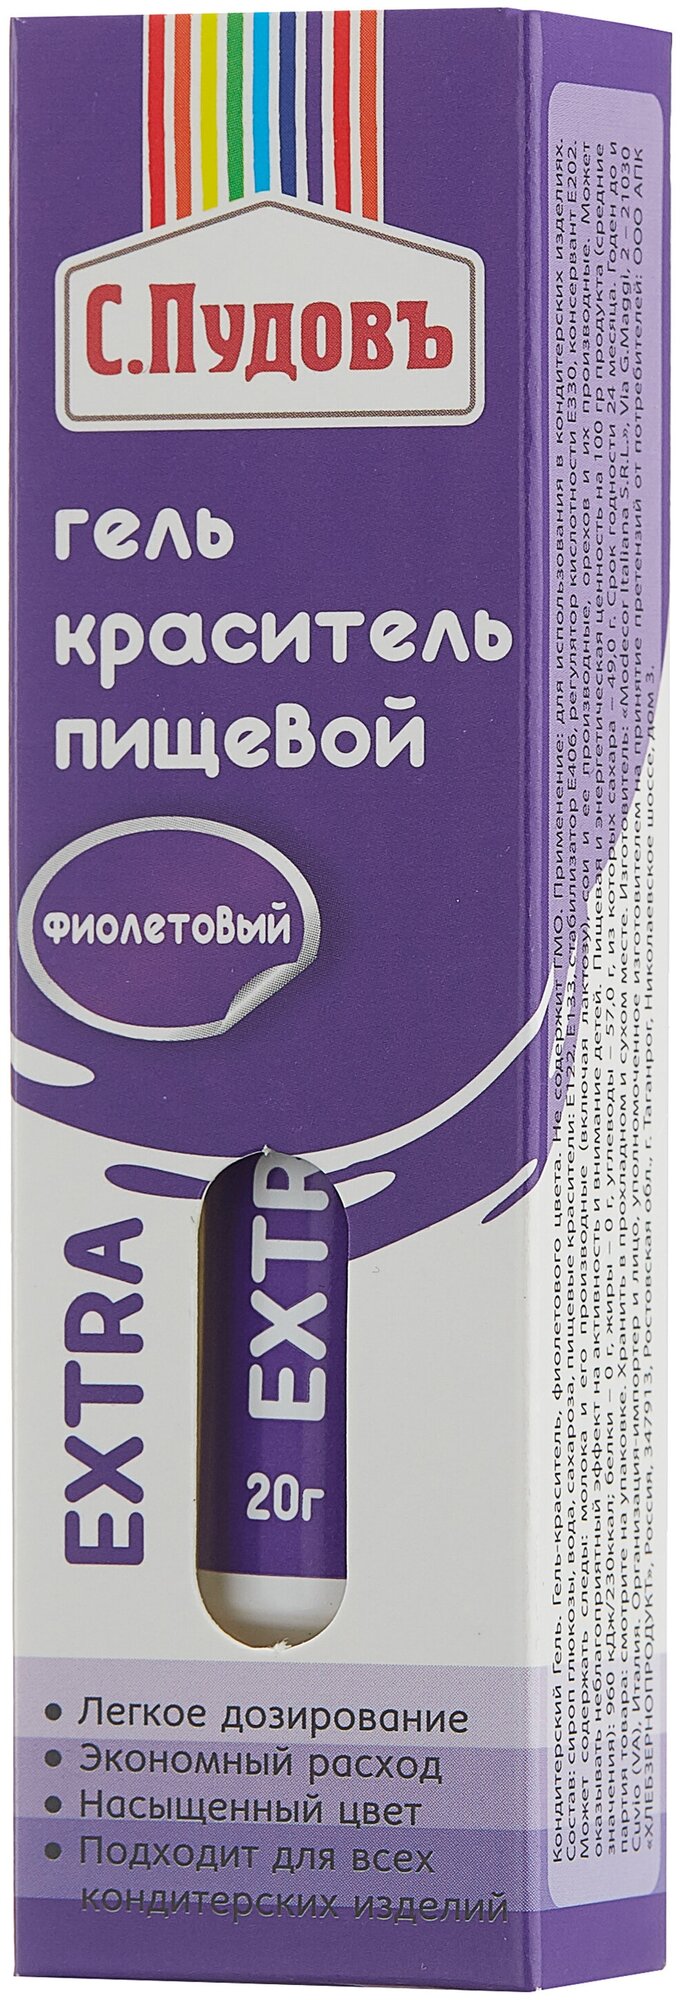 Гель-краситель пищевой Фиолетовый ТМ С.Пудовъ,Италия, 0,02кг